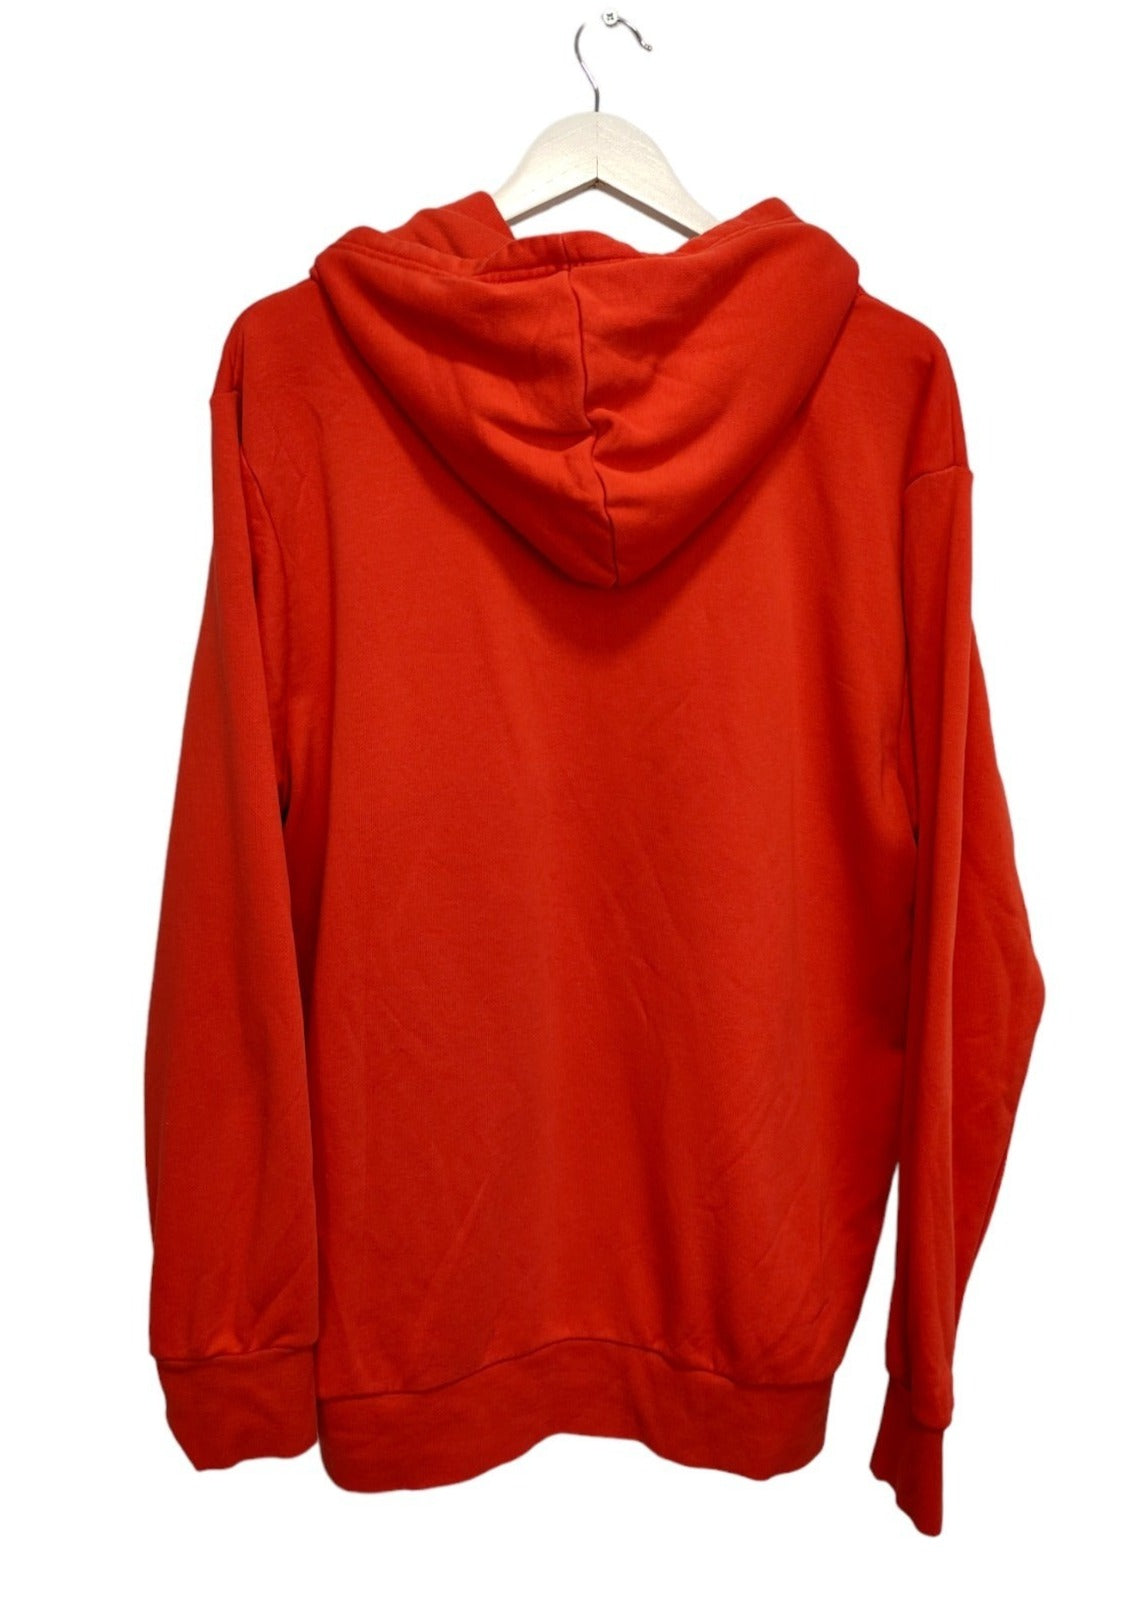 Ανδρική Φούτερ Μπλούζα ADIDAS σε Πορτοκαλί Χρώμα (XL)